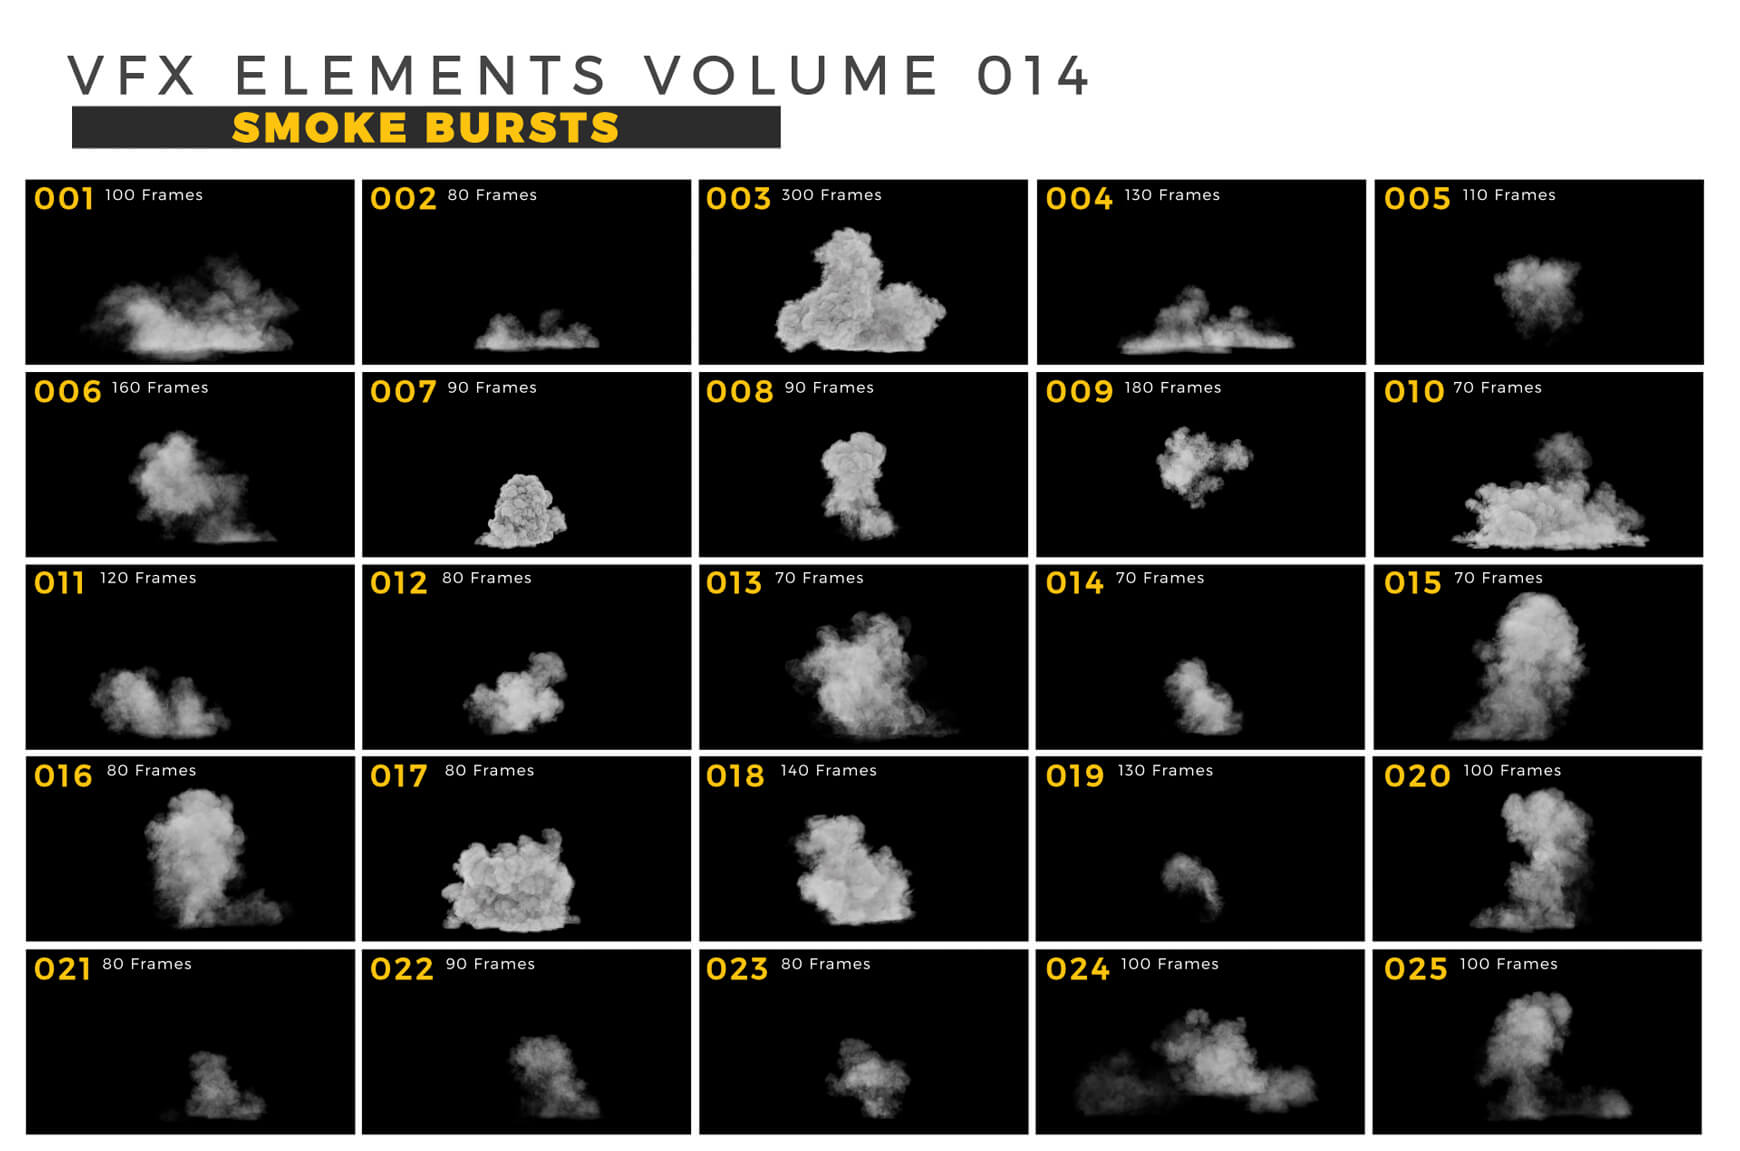 VFX Elements Volume 014 Smoke Bursts